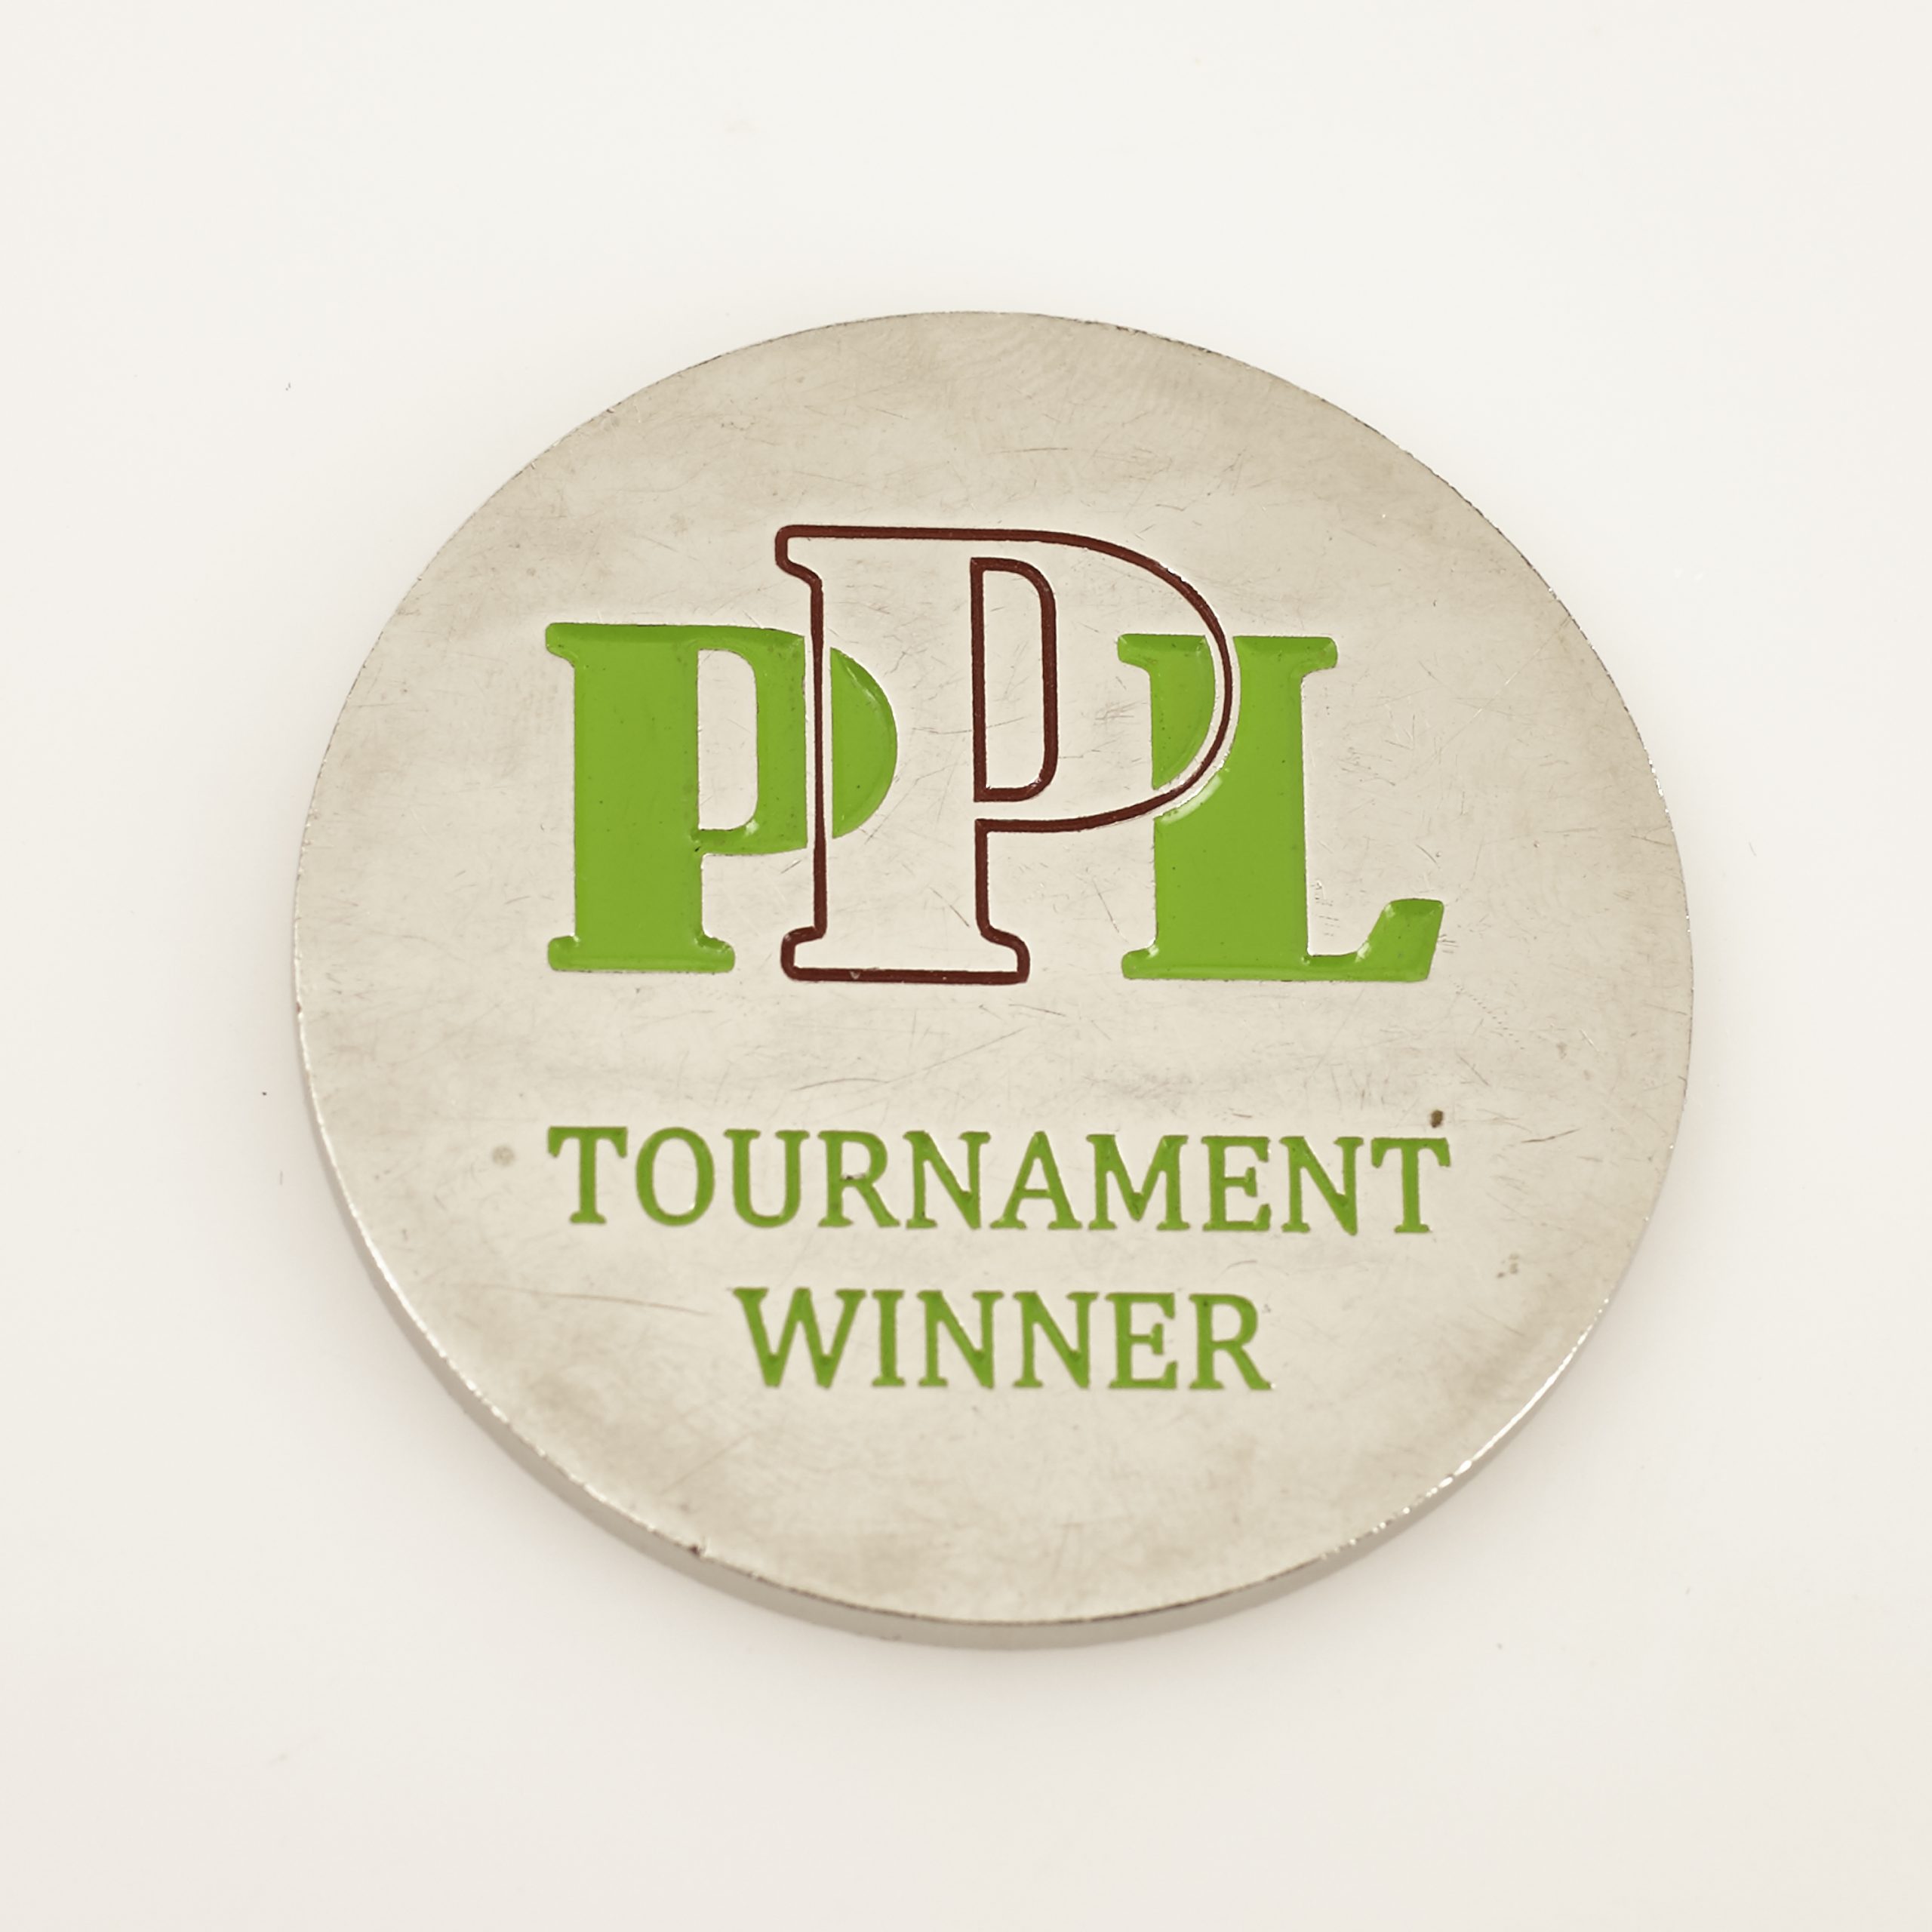 PERTH POKER LEAGUE PPL, TOURNAMENT WINNER (Green), Poker Card Guard